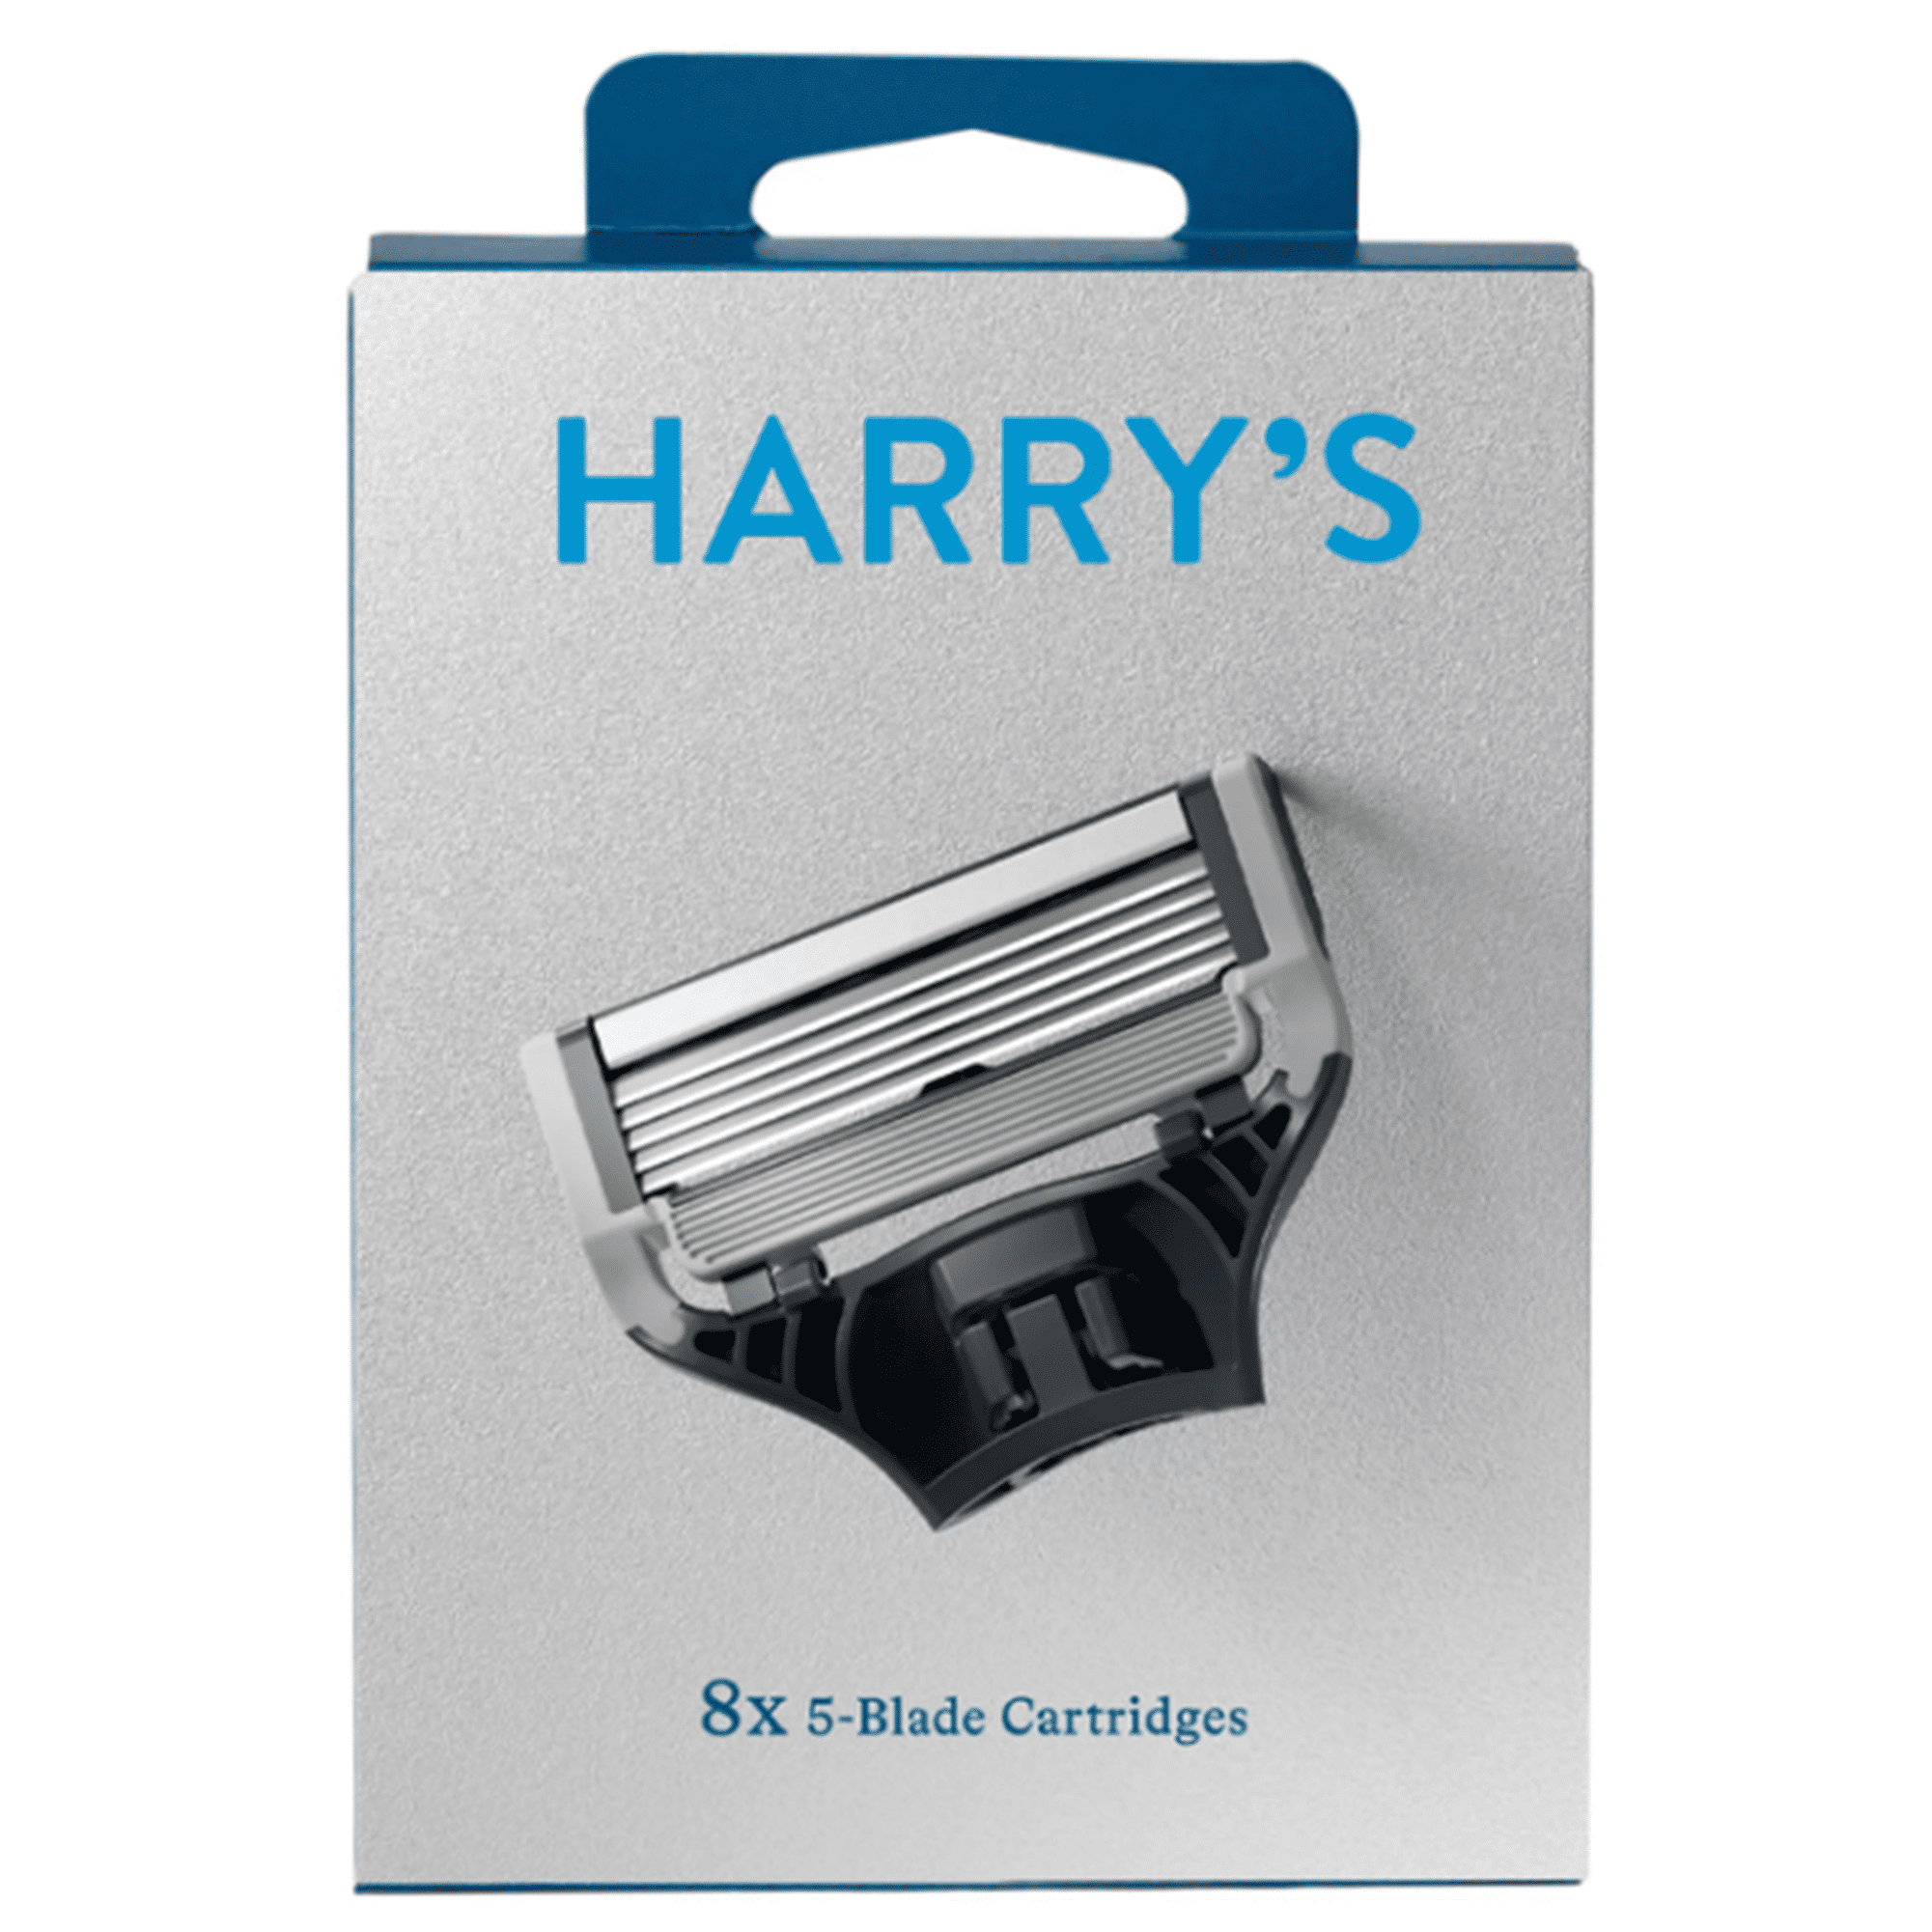 Harry's Men's 5-Blade Razor Blade Refills, 8 Count